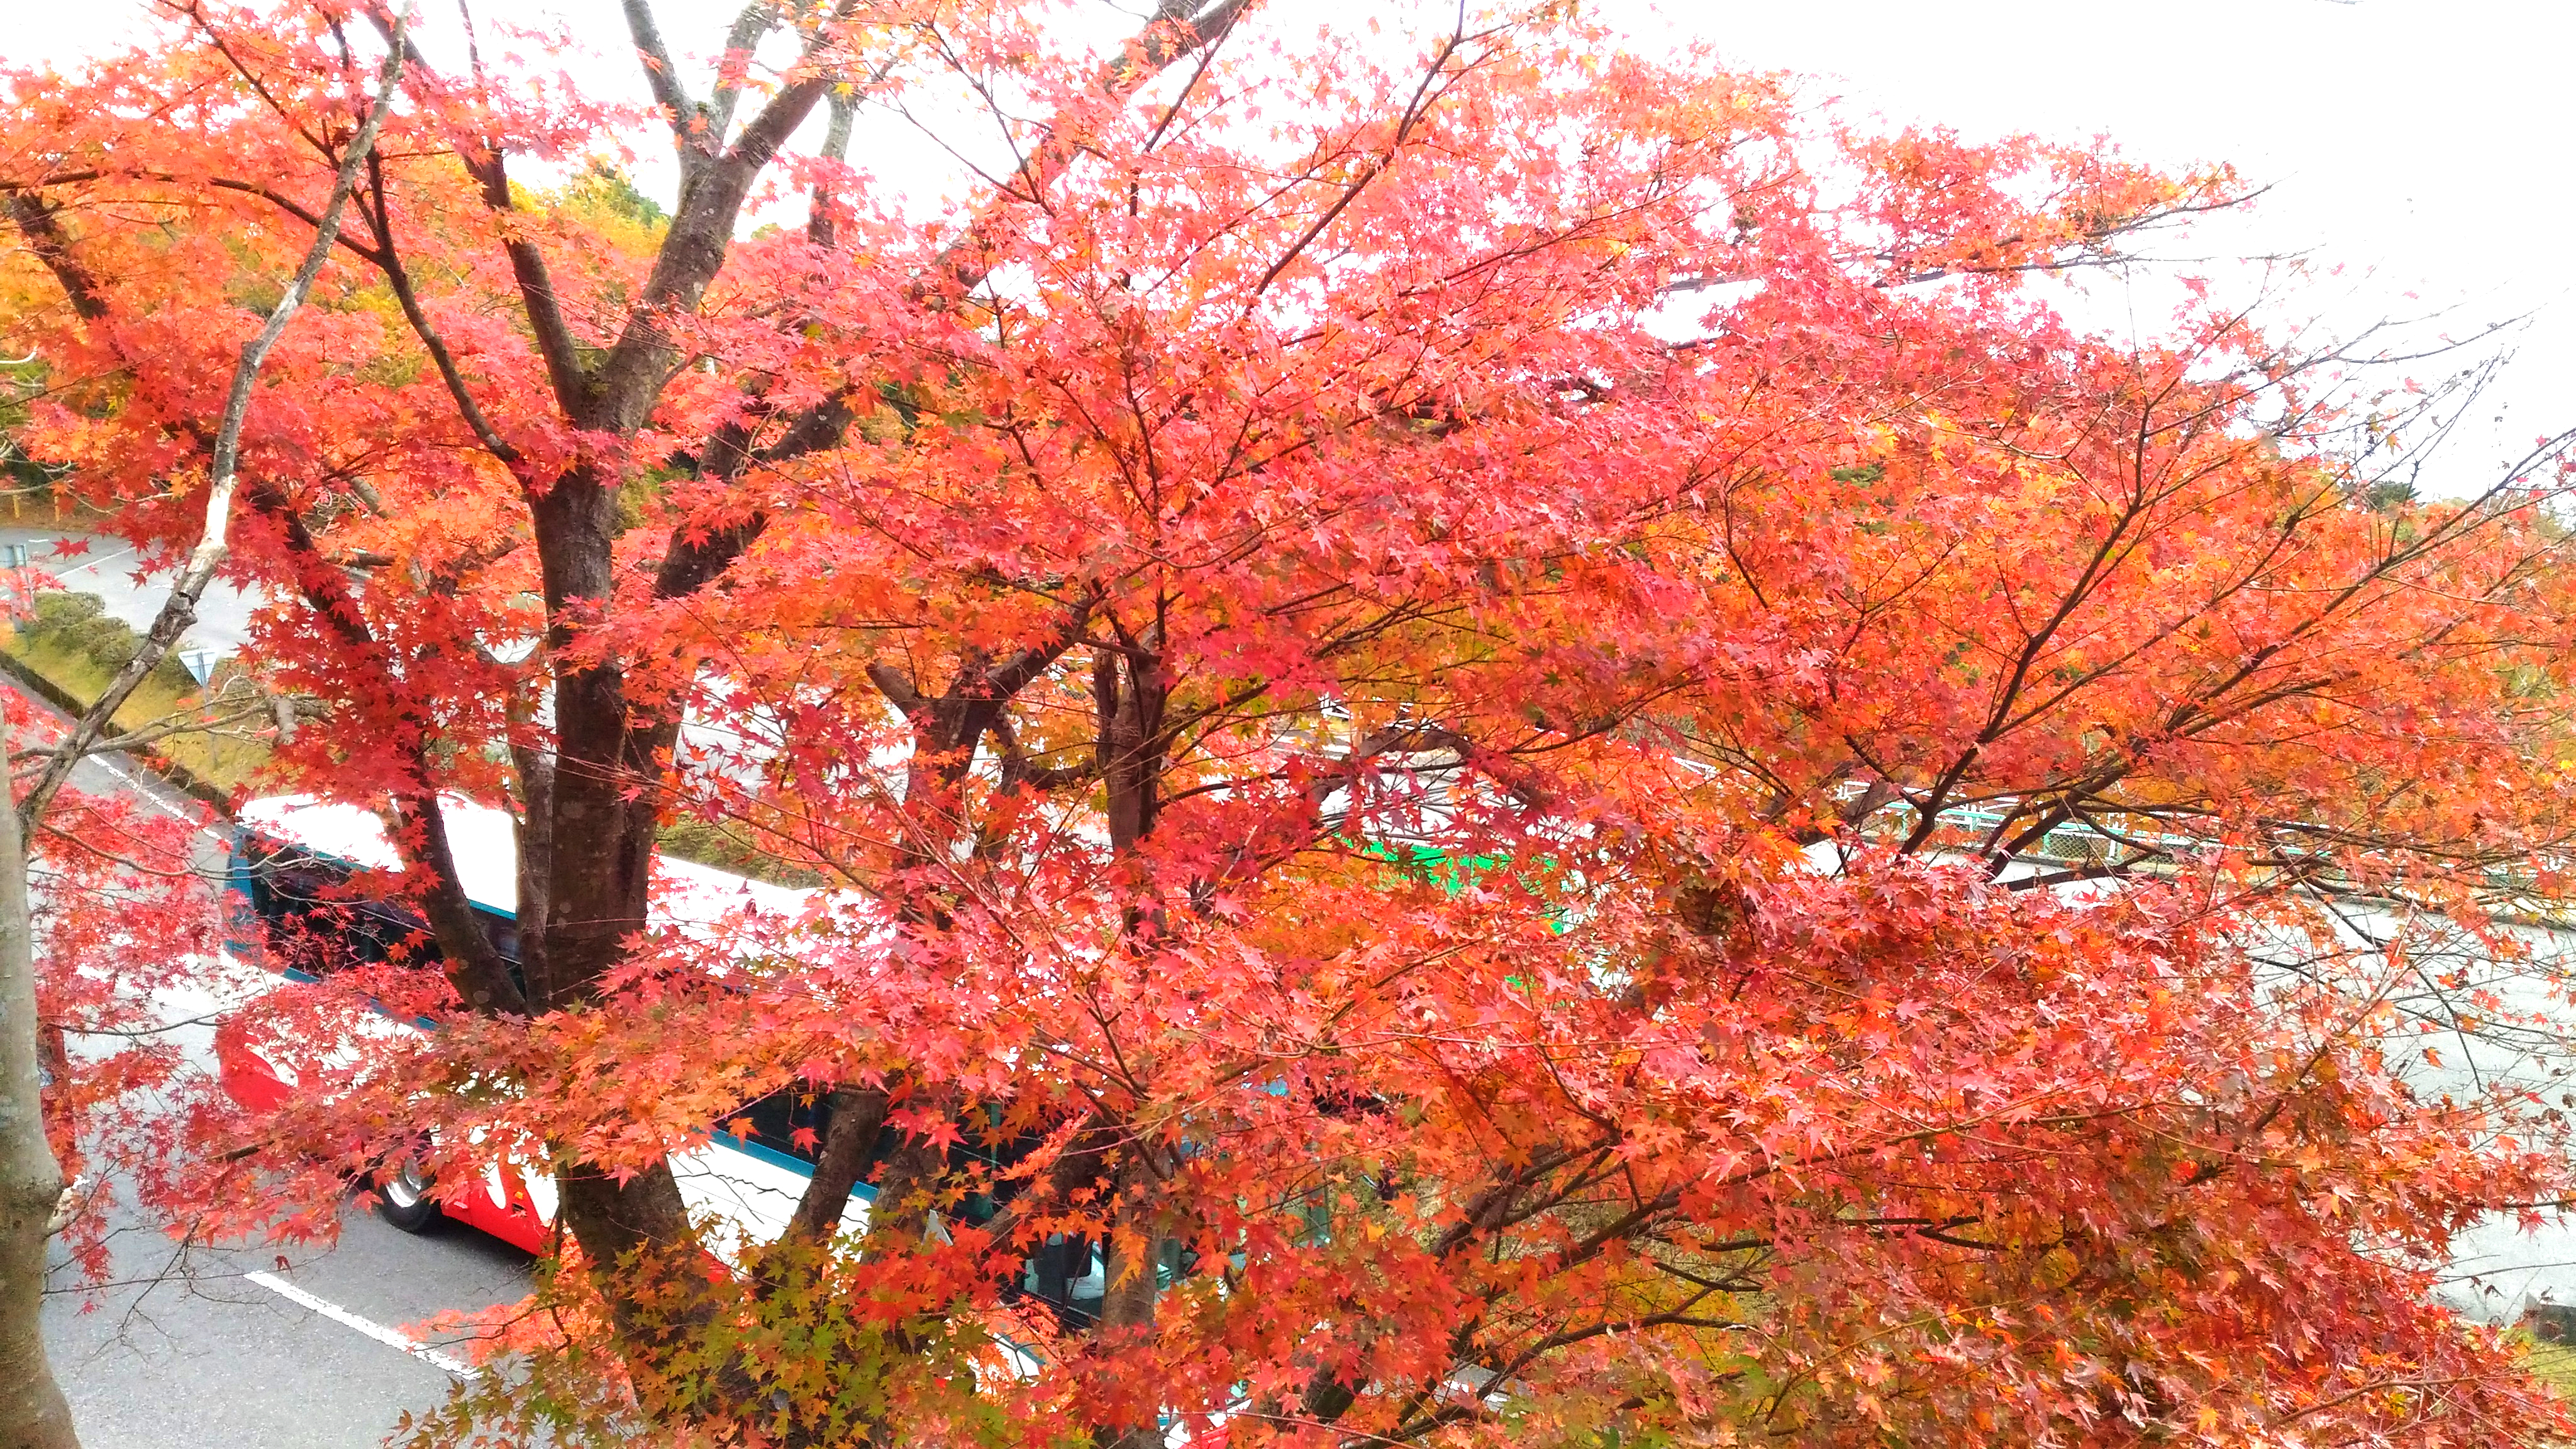 延暦寺の紅葉は混雑する 滋賀で人気の比叡山ドライブとは お出かけスポットあるく子